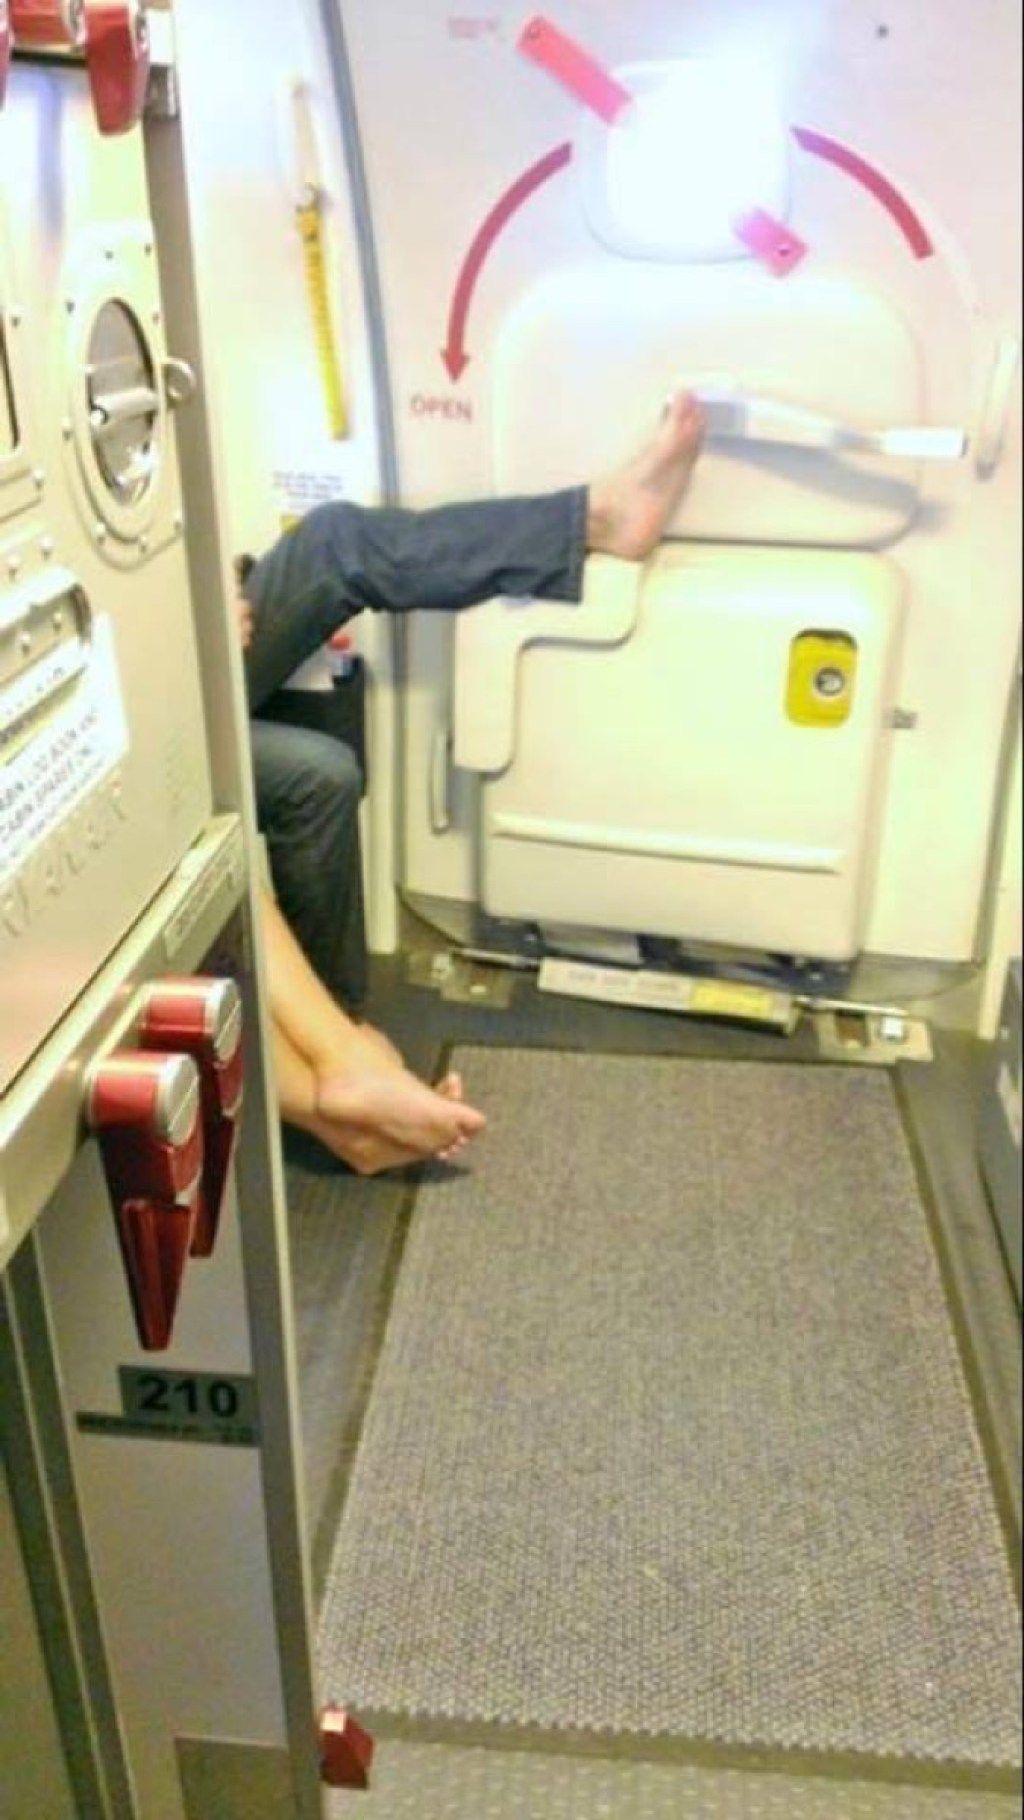 Pegangan menyentuh penumpang maskapai dengan foto kaki penumpang pesawat yang mengerikan